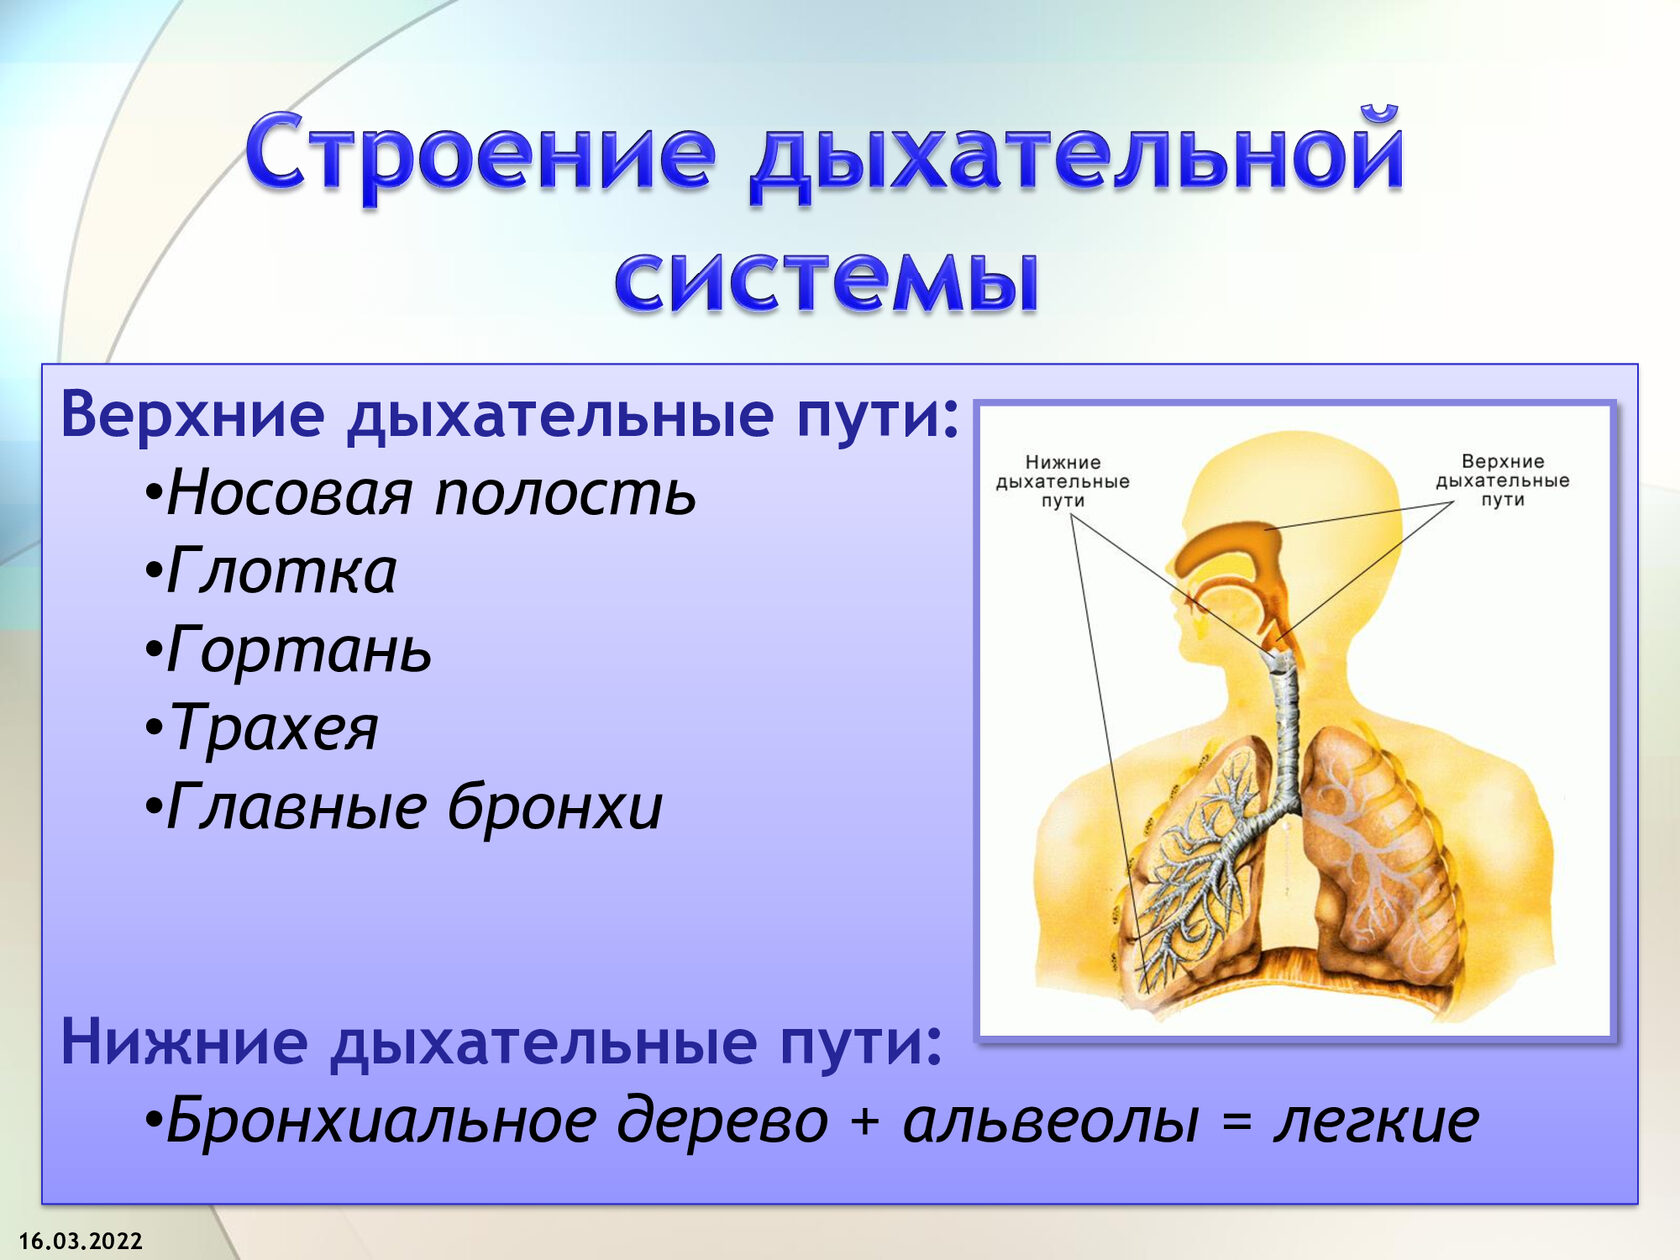 Дыхательная система особенности и функции. Система дыхательных путей схема. Схема строения верхний двхательных путей. Дыхательная система органов структура. Структура дыхательных путей человека.